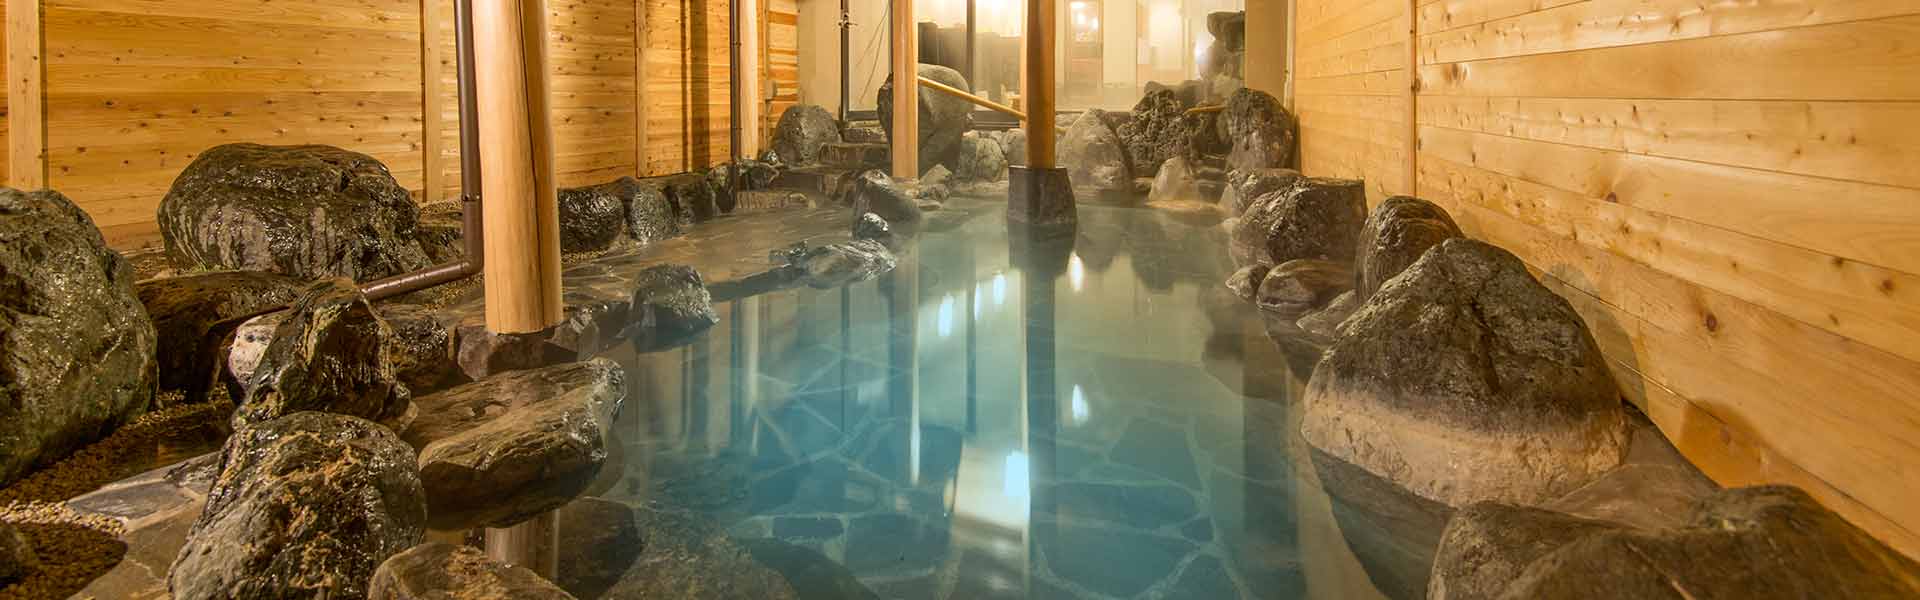 樅の木ホテル、天然温泉